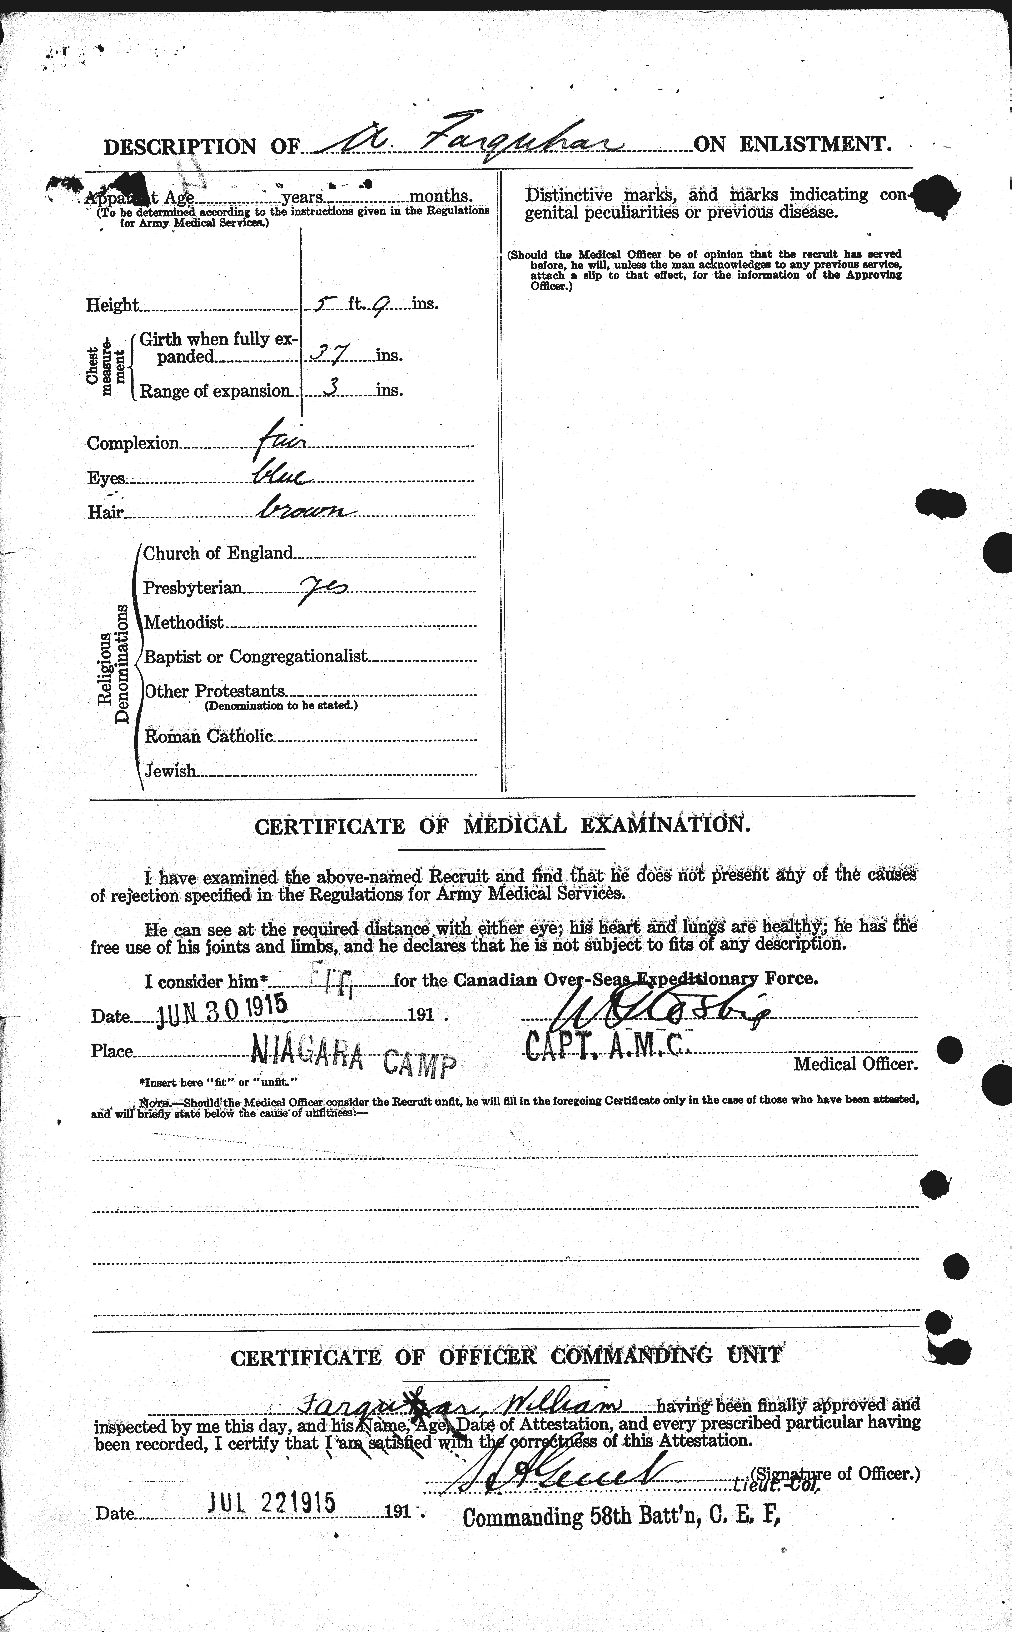 Dossiers du Personnel de la Première Guerre mondiale - CEC 319286b